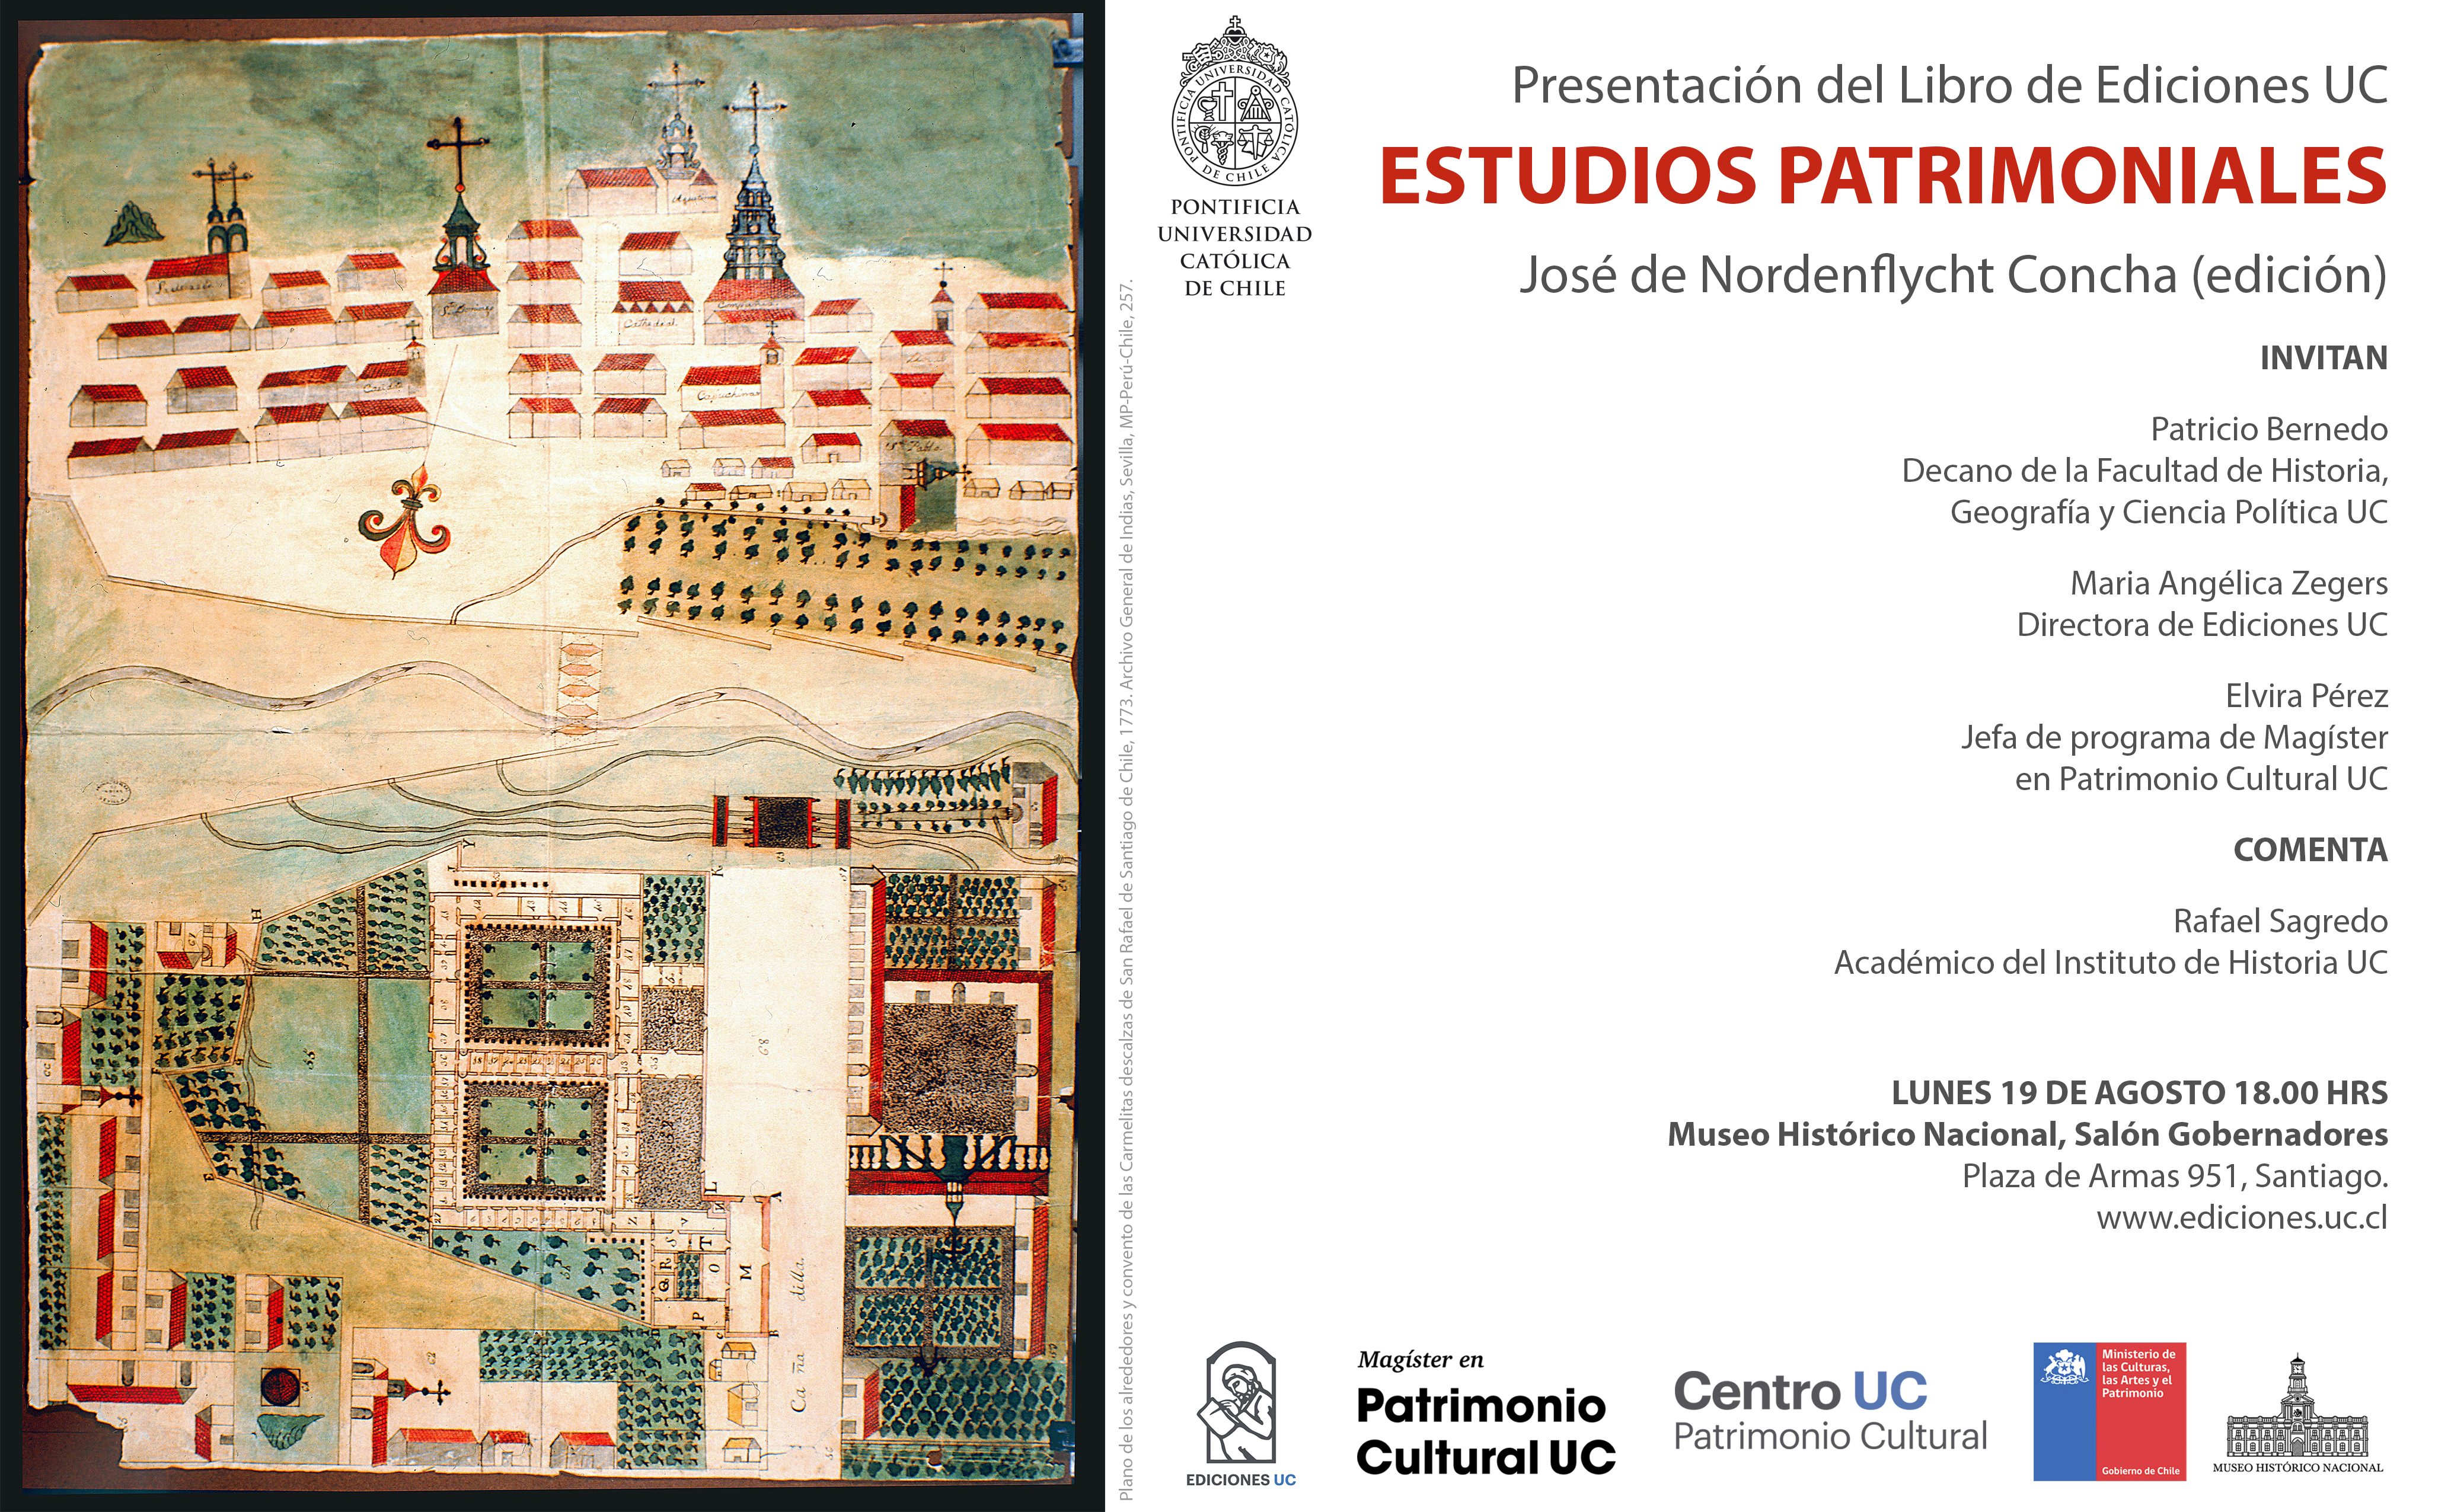 Invitacion_Estudios_Patrimoniales_final_rev.jpg